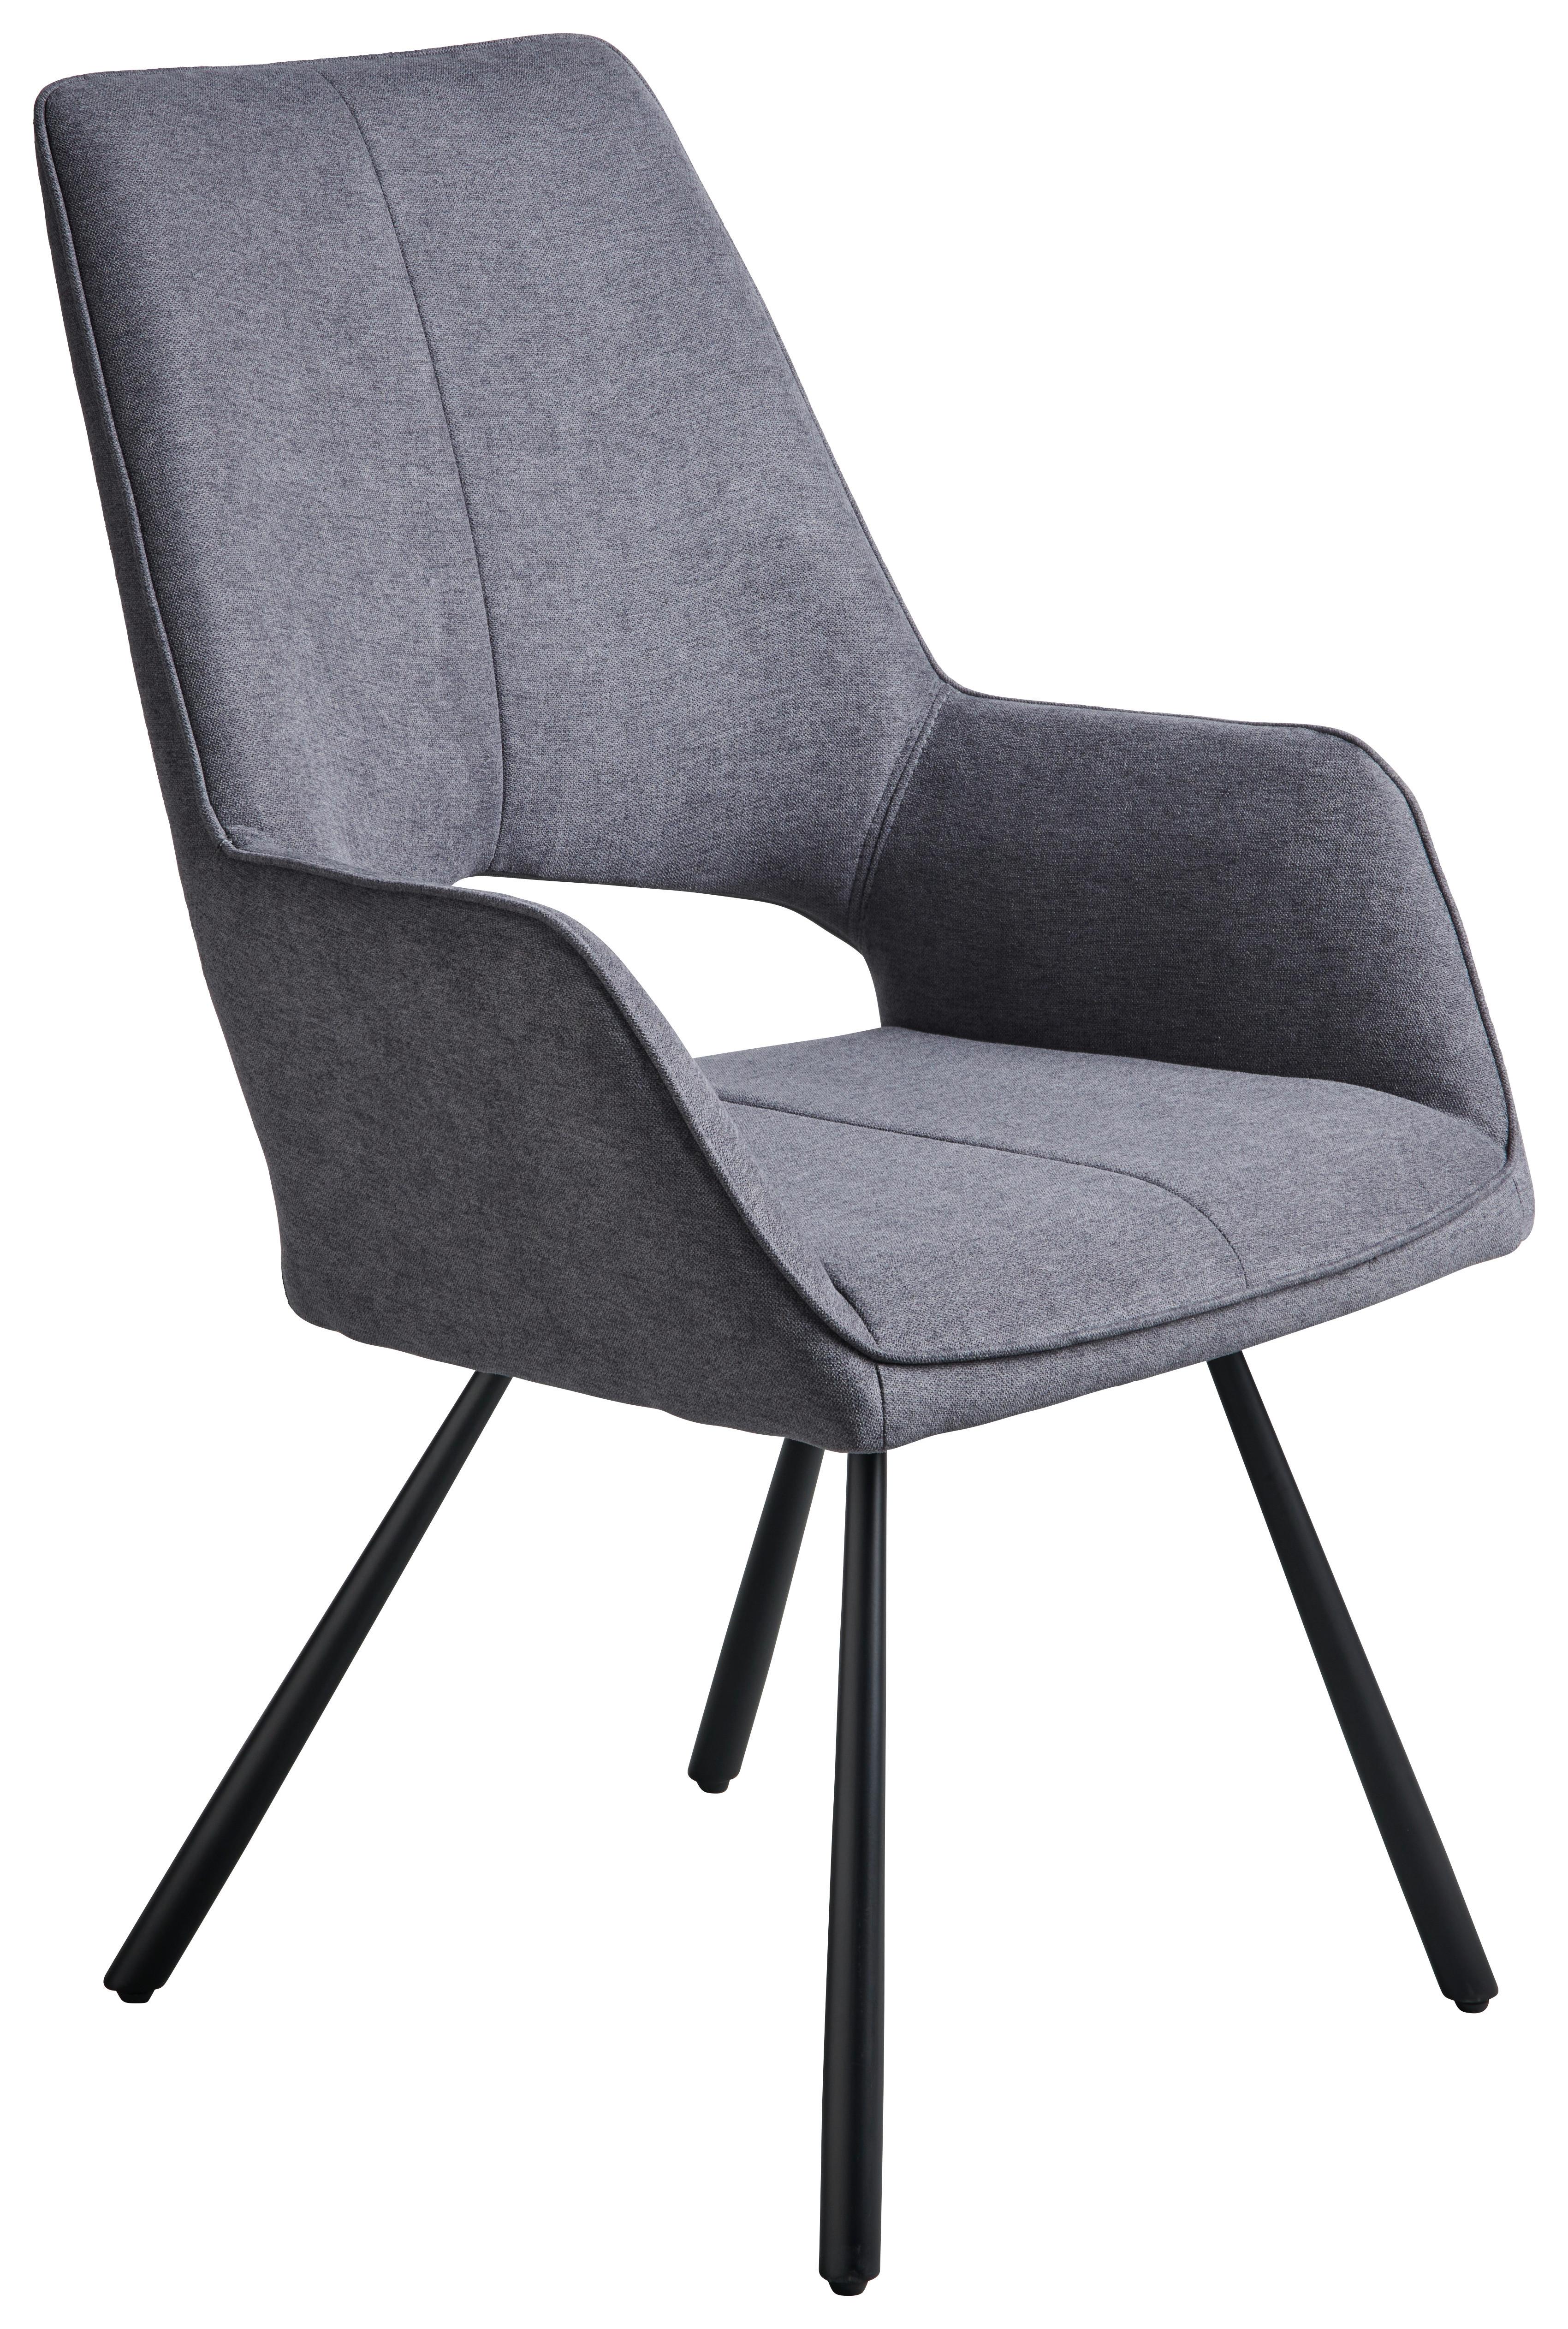 Čtyřnohá Židle Beatrice Ii - šedá/černá, Moderní, kov/textil (60/93/65cm)